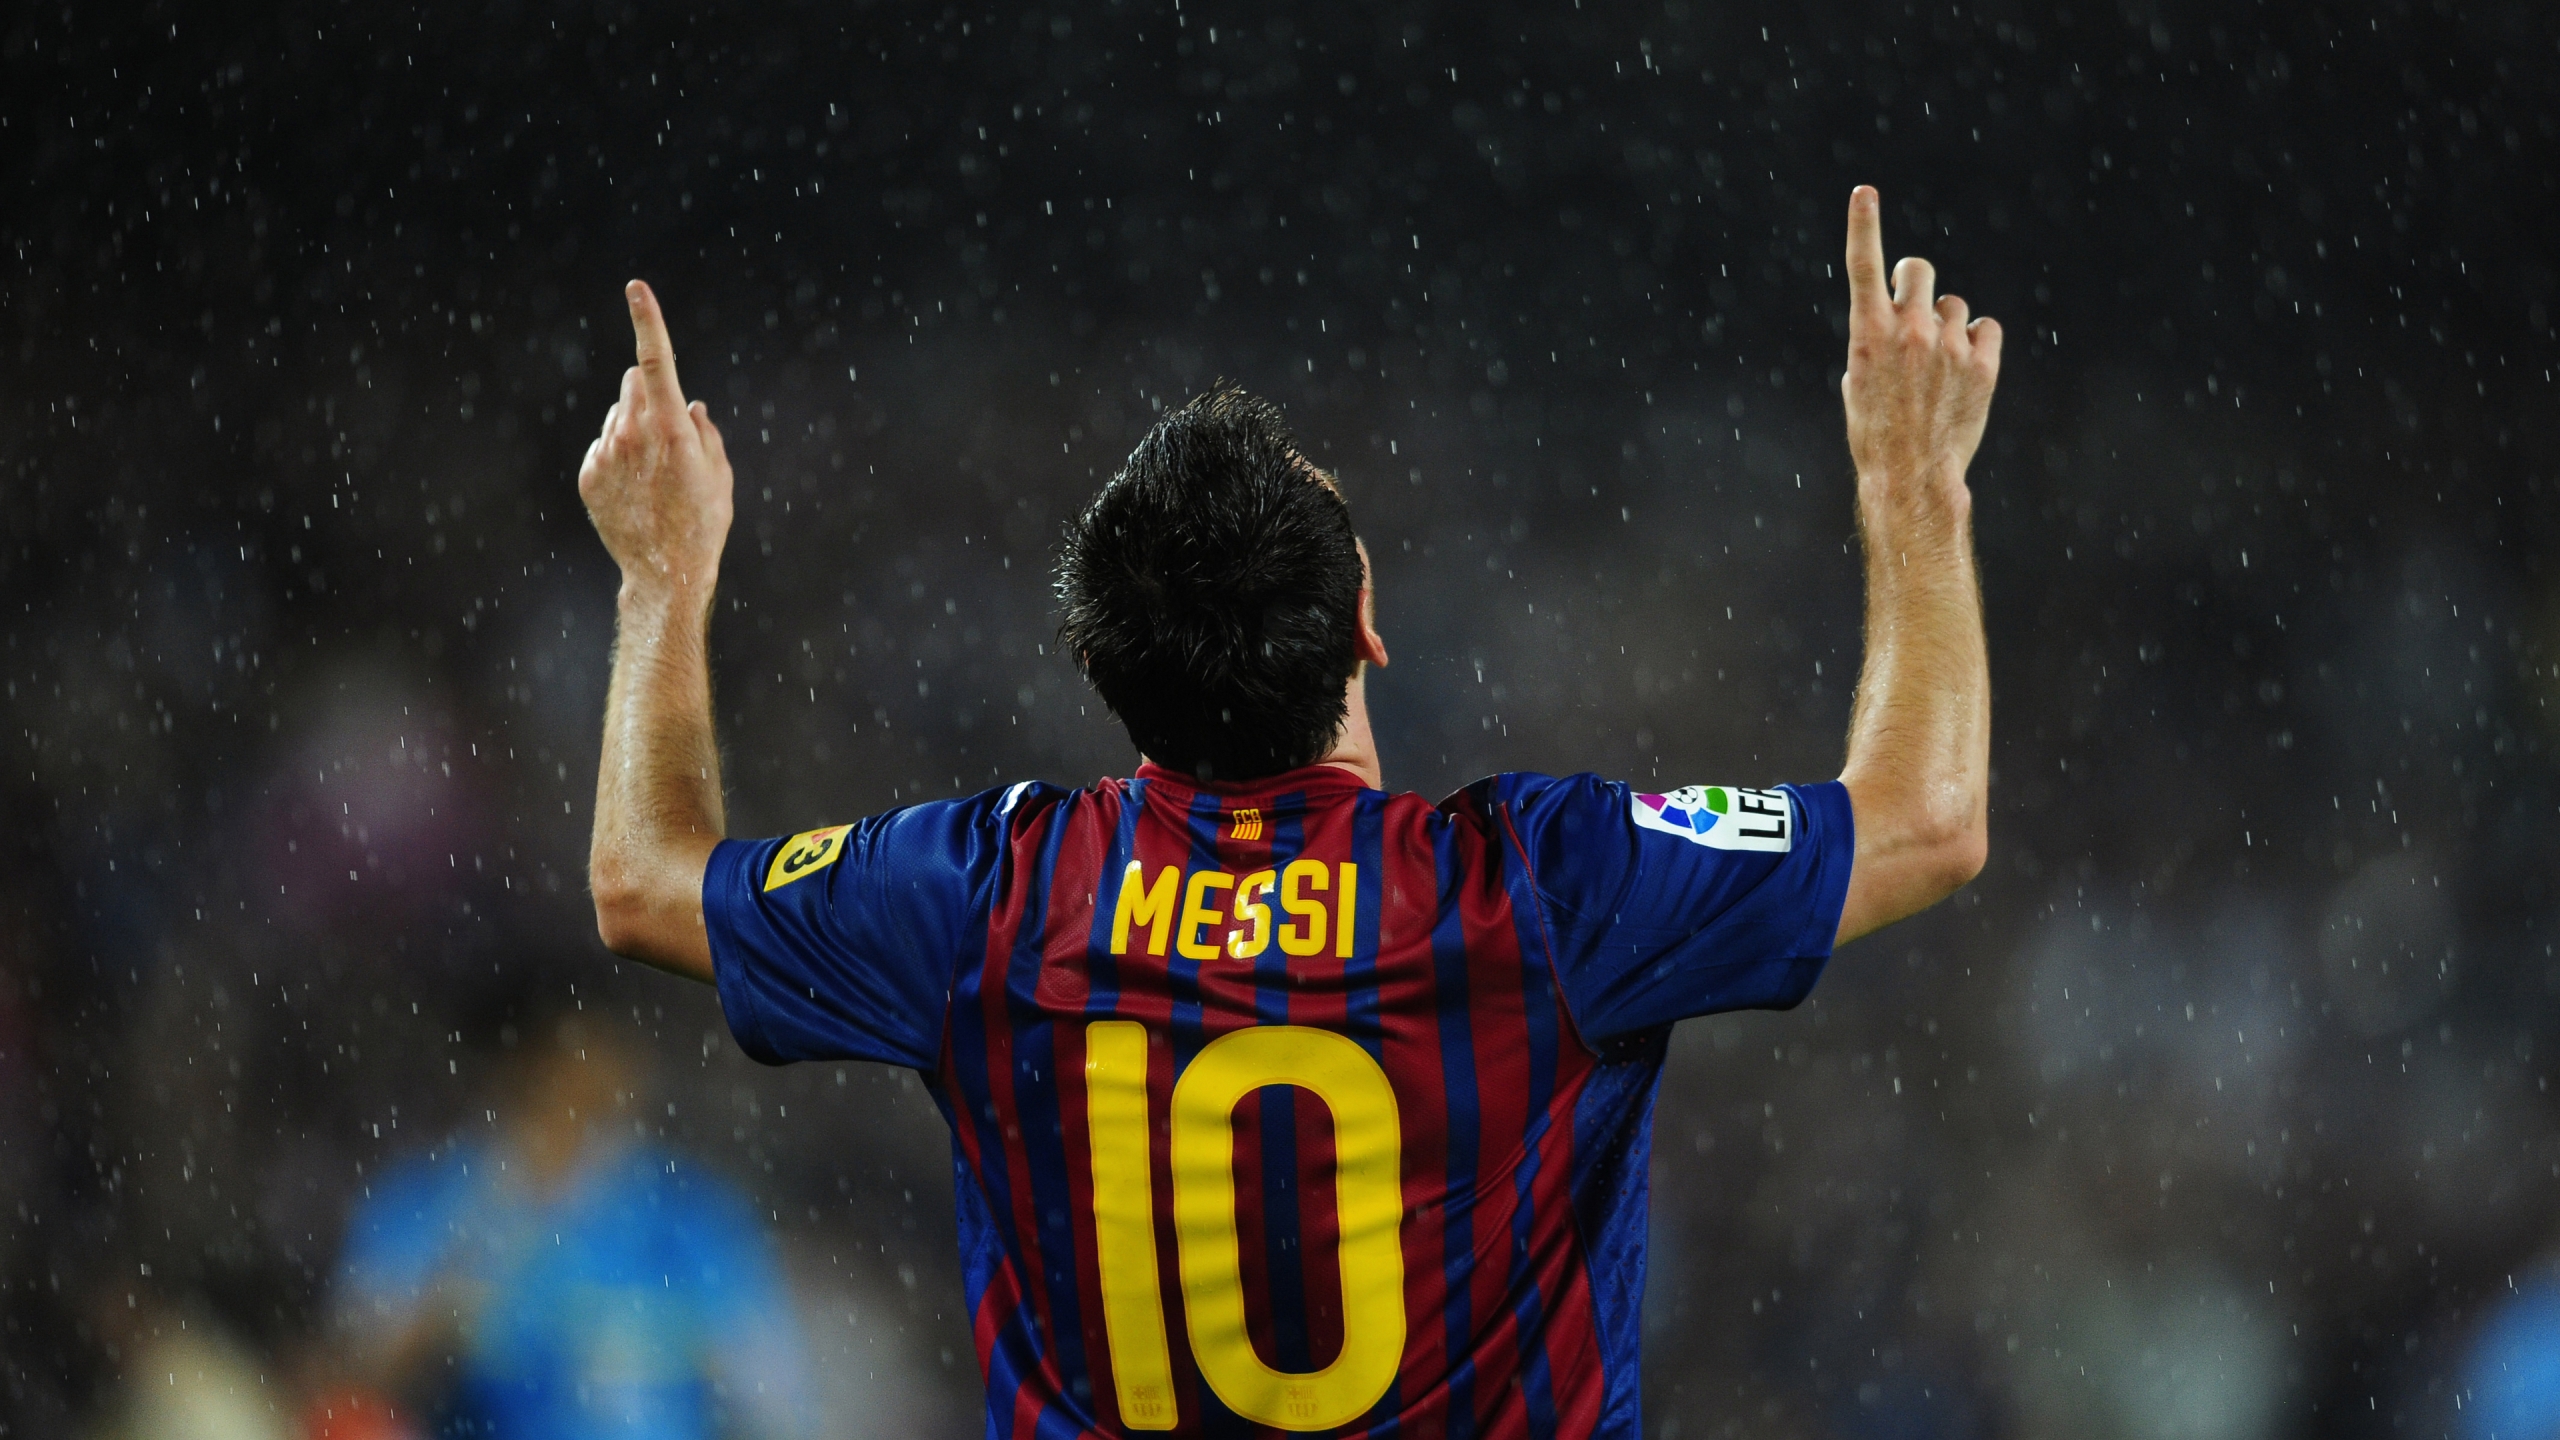 Lionel Messi in Rain for 2560x1440 HDTV resolution